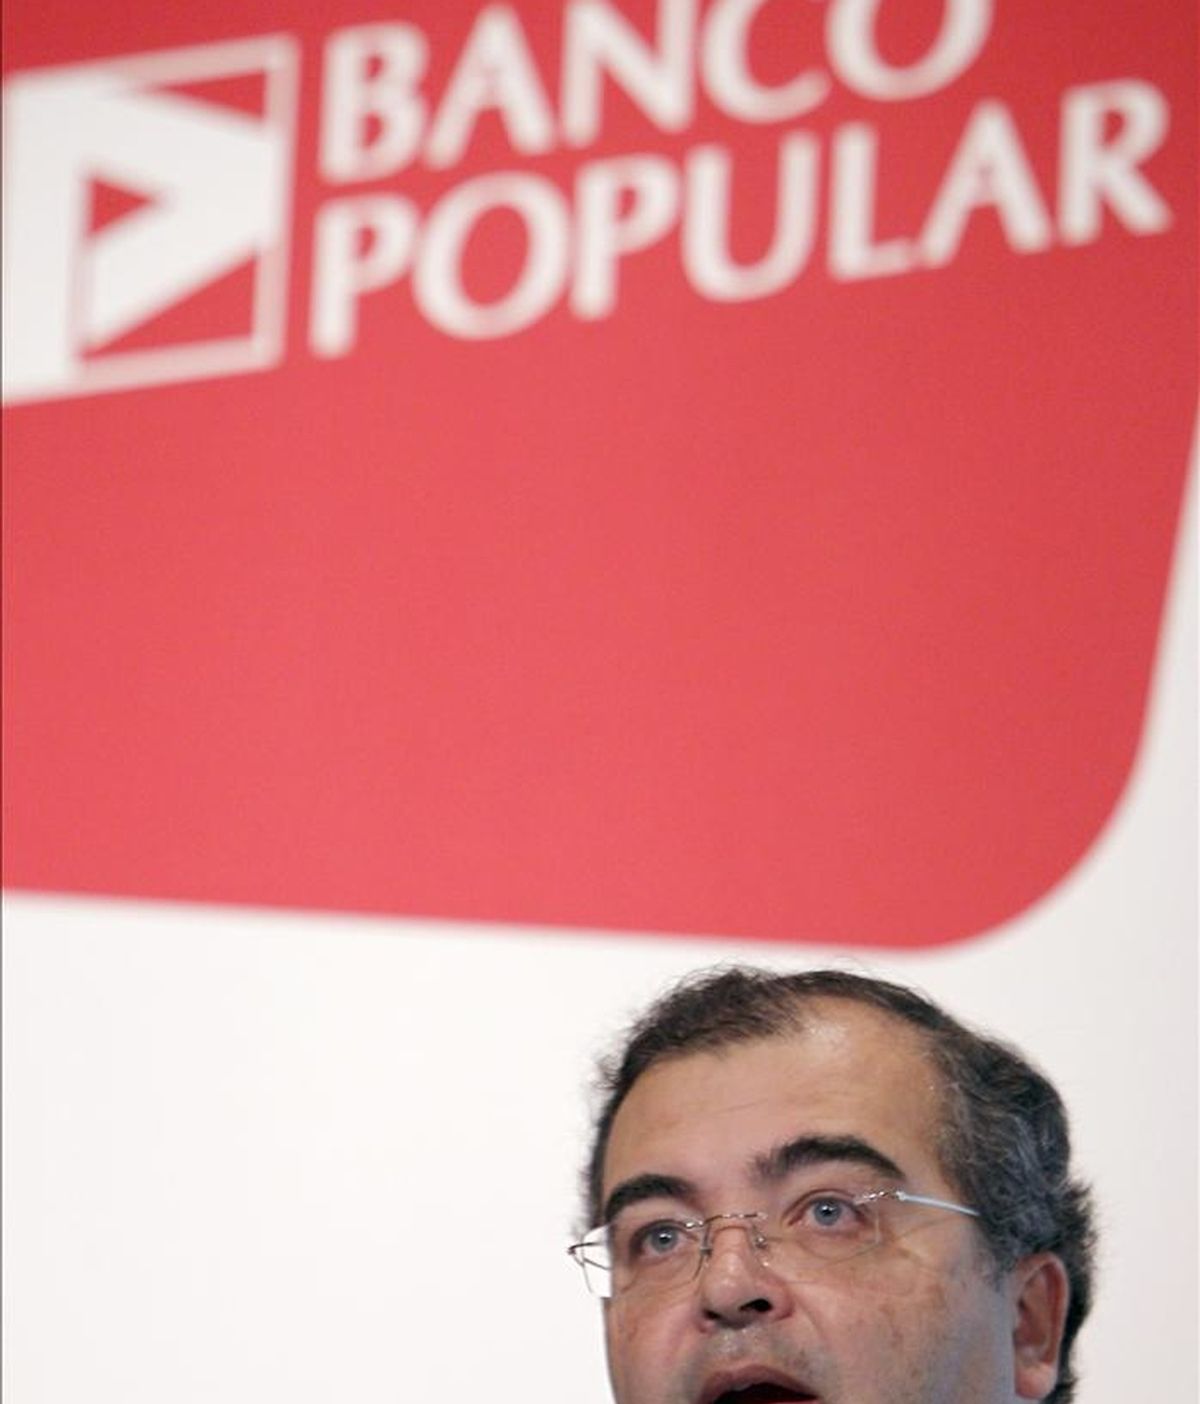 El presidente del Banco Popular, Ángel Ron, durante la presentación hoy de los resultados logrados en 2010 por el banco, que se redujeron el 23 % en tasa interanual y quedaron en 590 millones de euros tras las fuertes dotaciones a provisiones realizadas. EFE